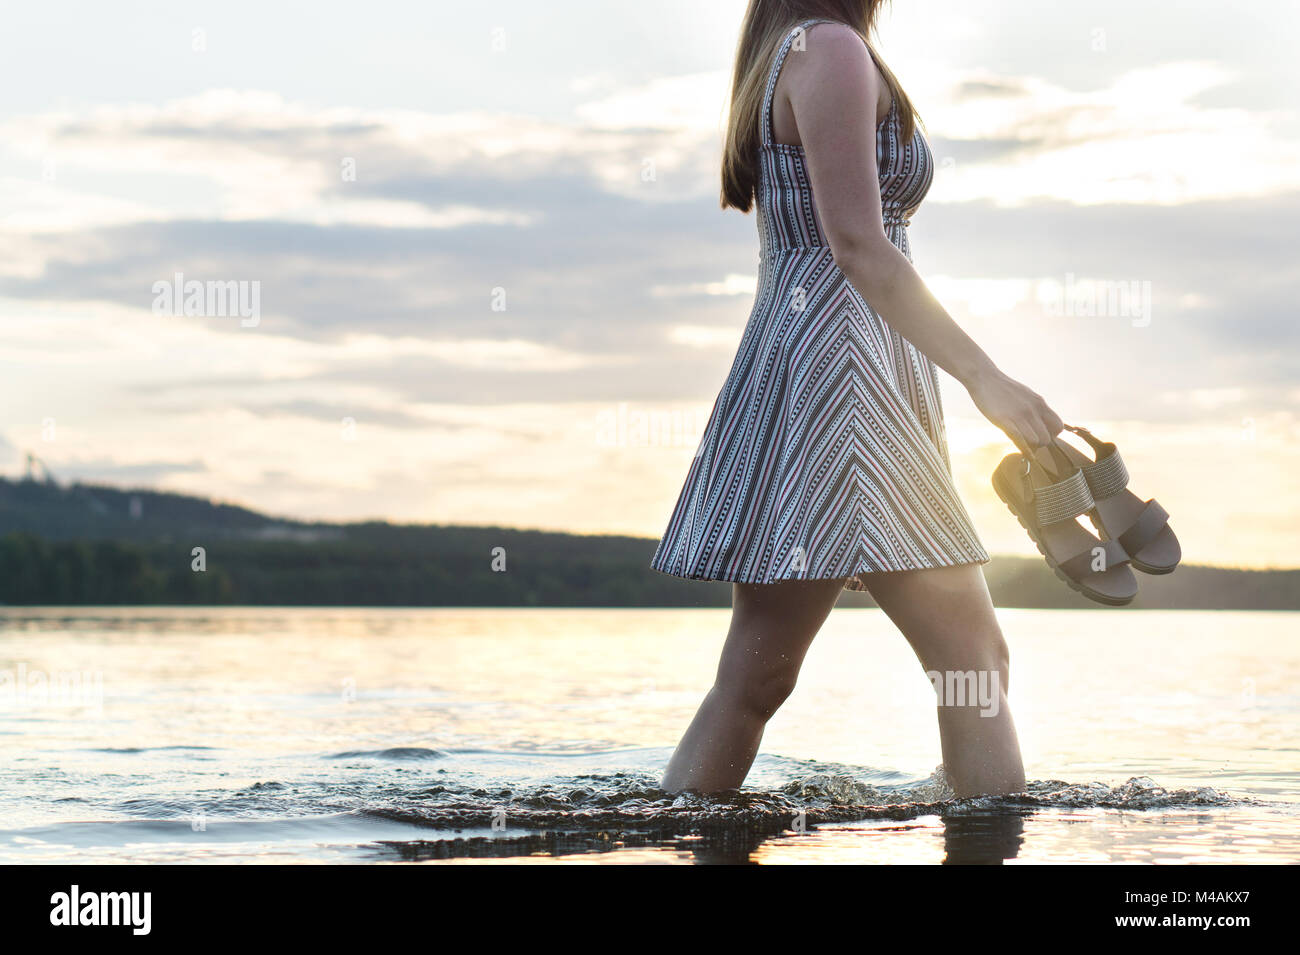 Junge attraktive Frau wandern in See bei Sonnenuntergang. Sorglos und glücklich Lifestyle. Die Sandalen in der Hand. Freiheit und Glück Konzept. Stockfoto